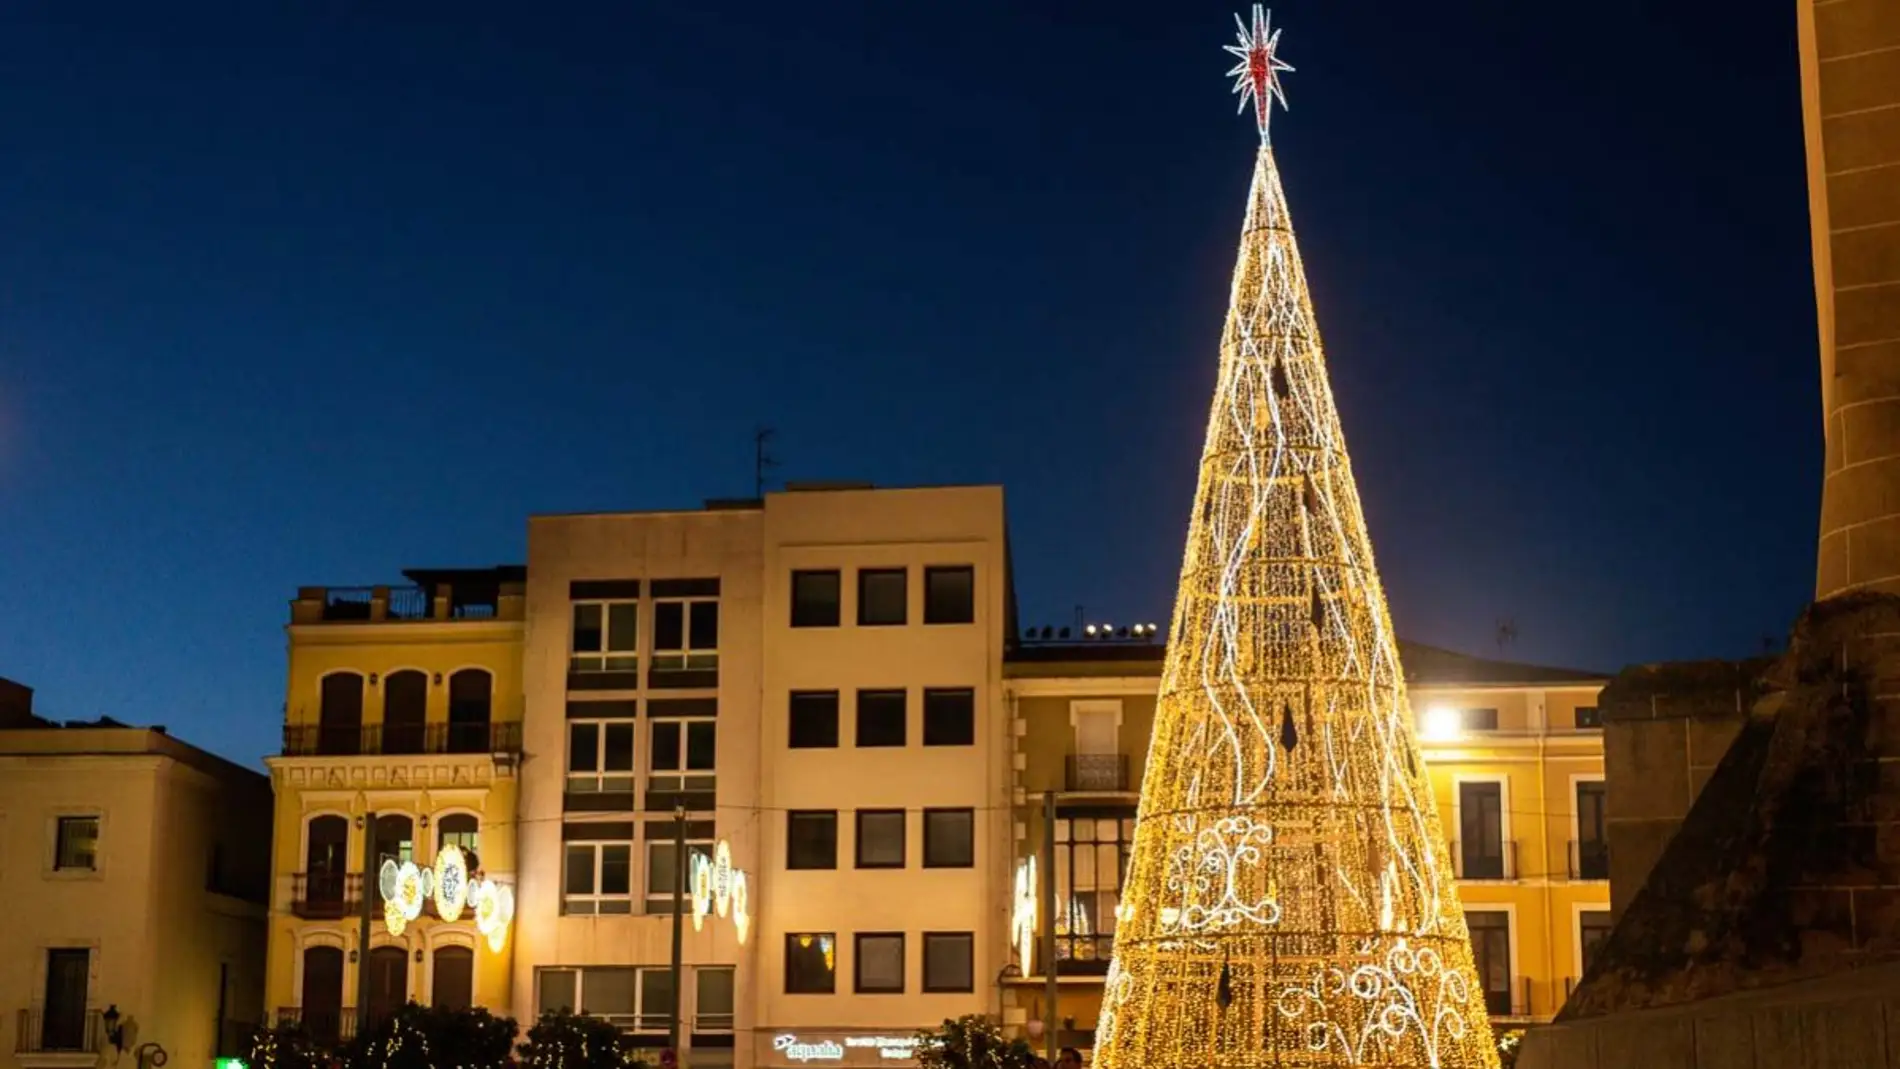 La programación de navidad arranca este viernes con el encendido del alumbrado navideño y la apertura del Mercado en San Francisco